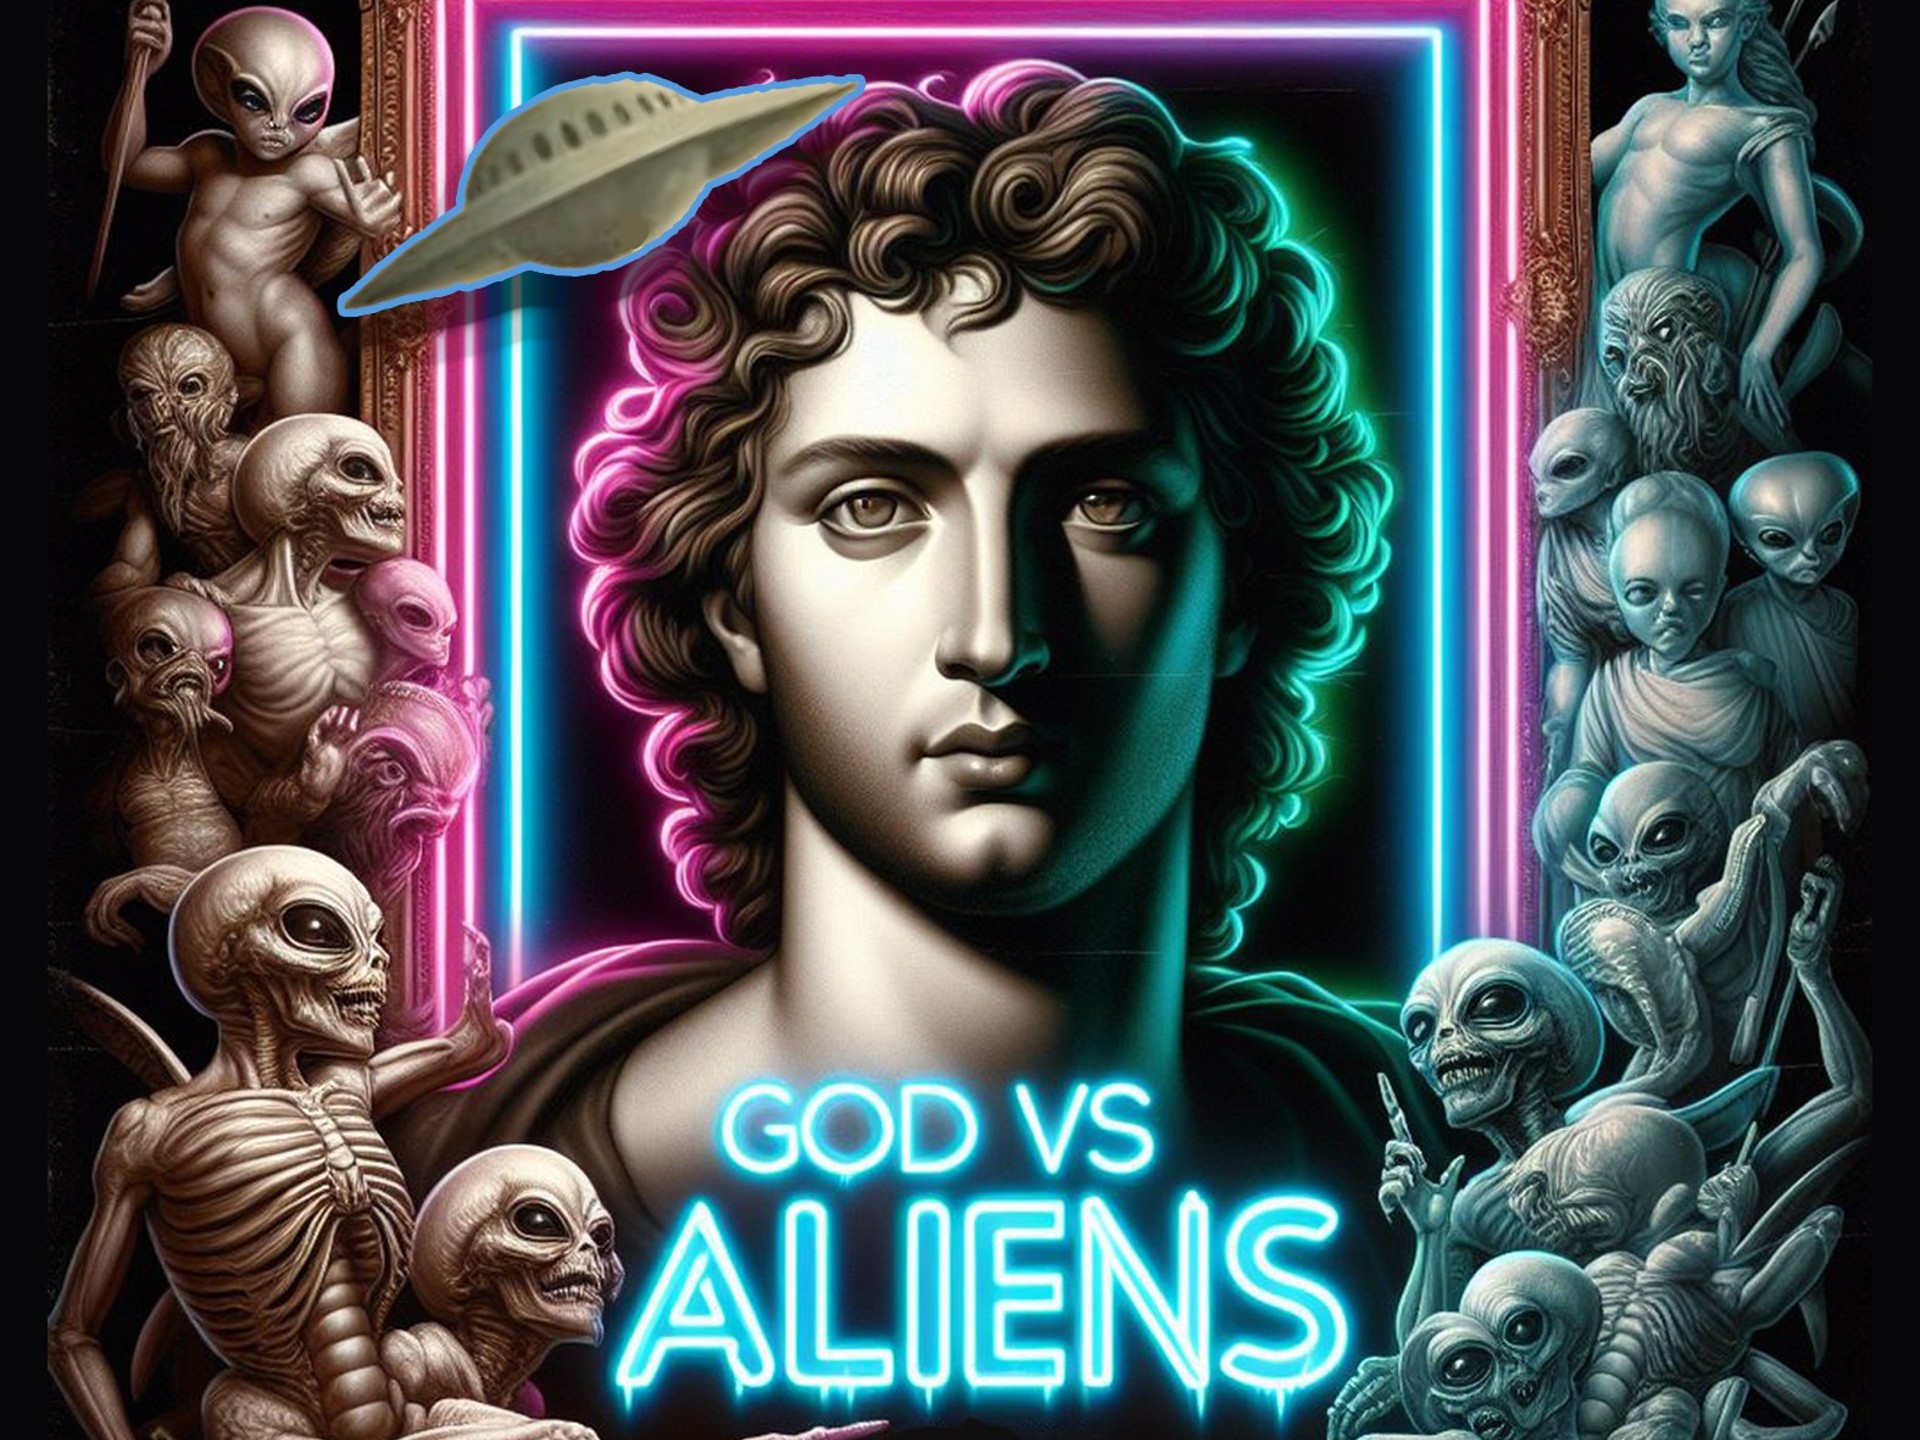 God vs Aliens movie